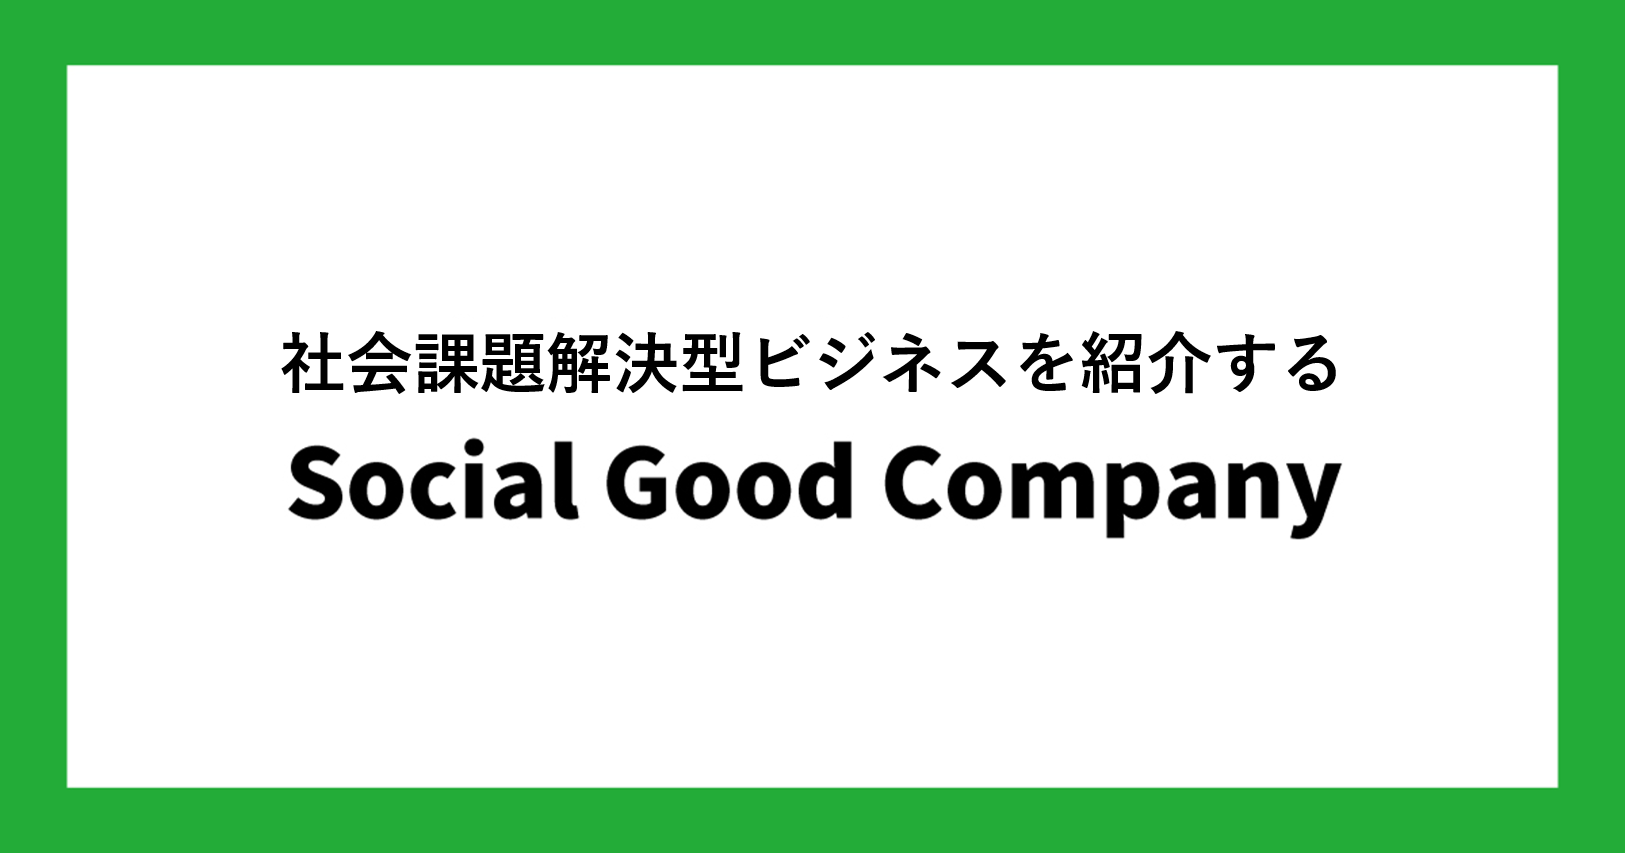 社会課題解決型ビジネスを紹介する「Social Good Company」